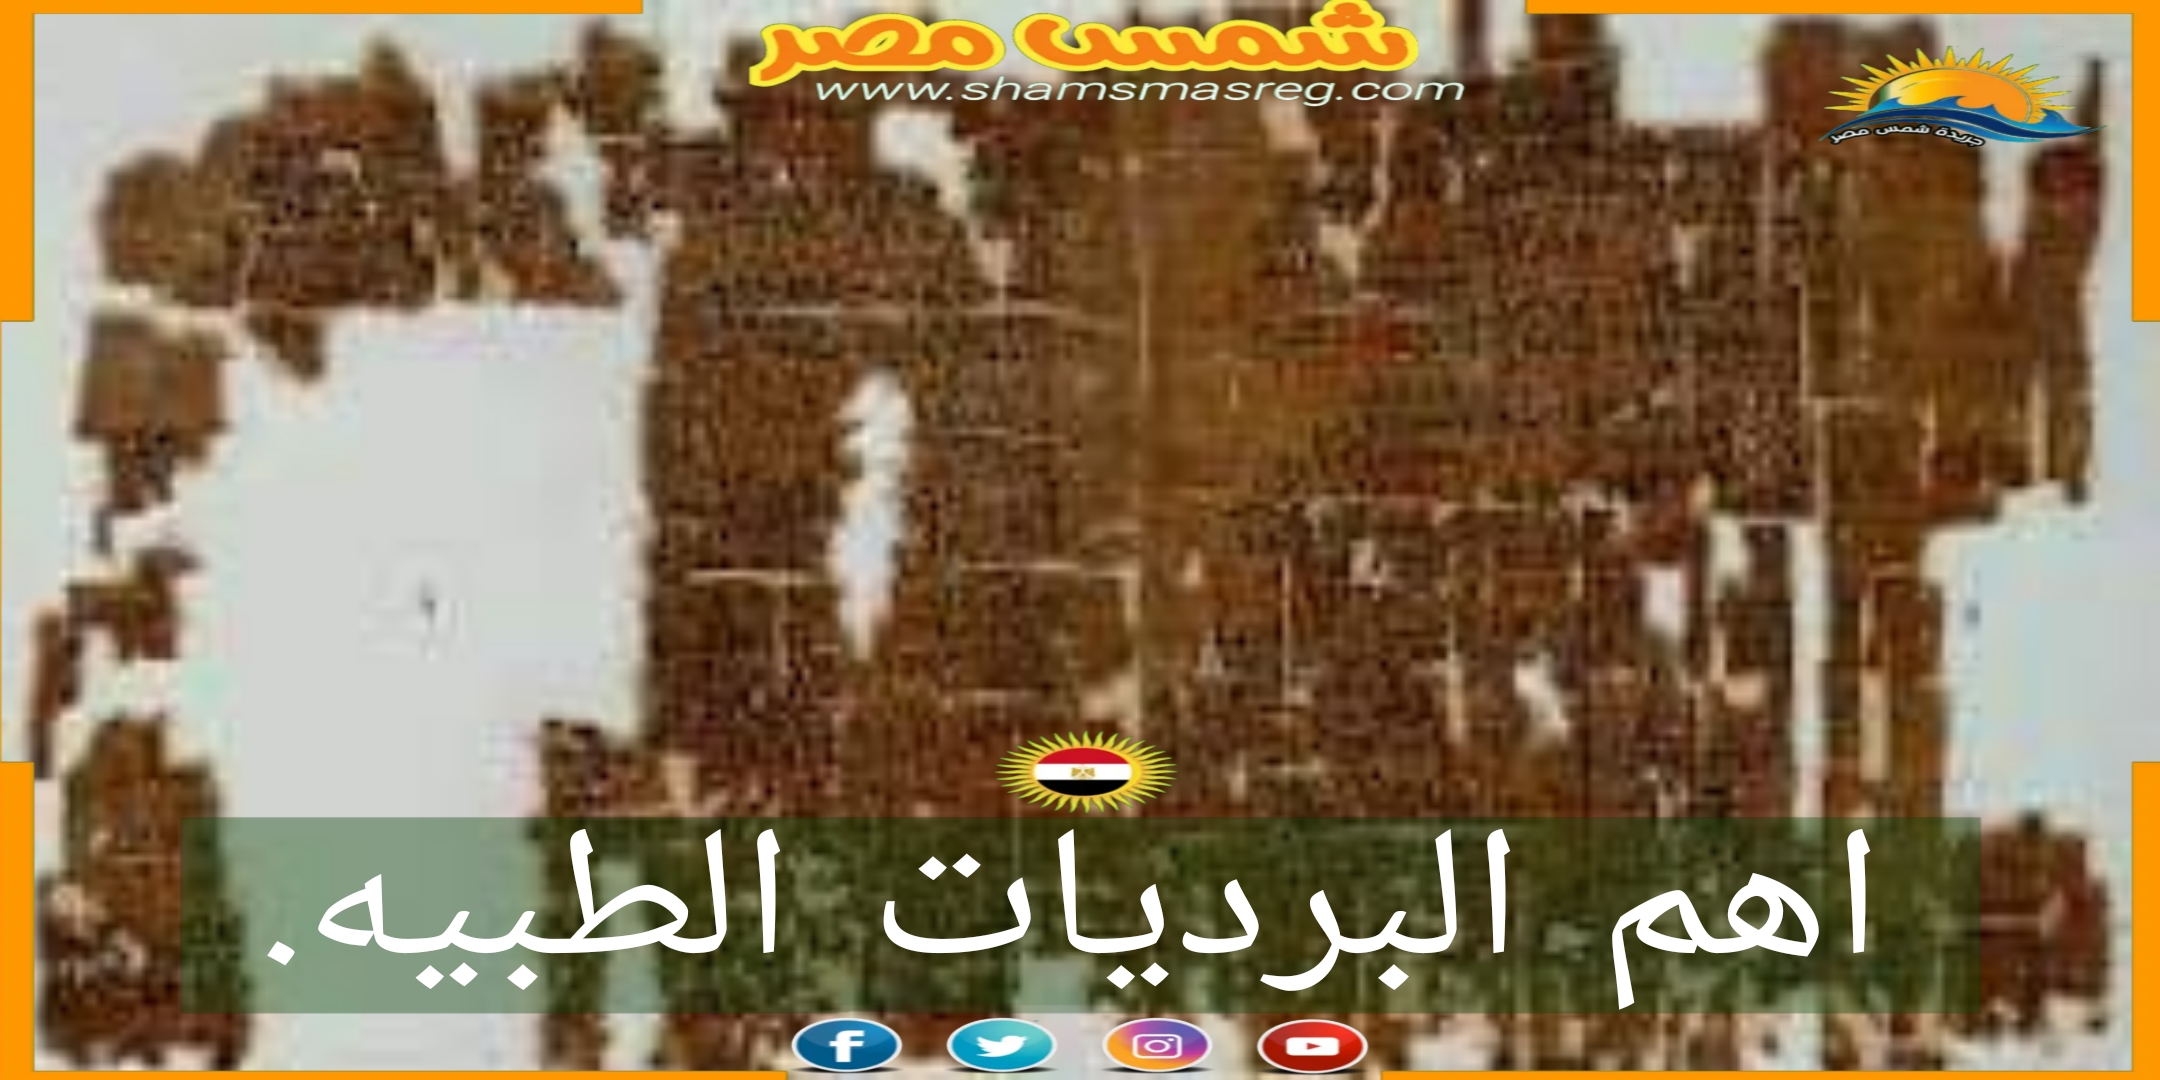 شمس مصر/ البرديات الطبيه.